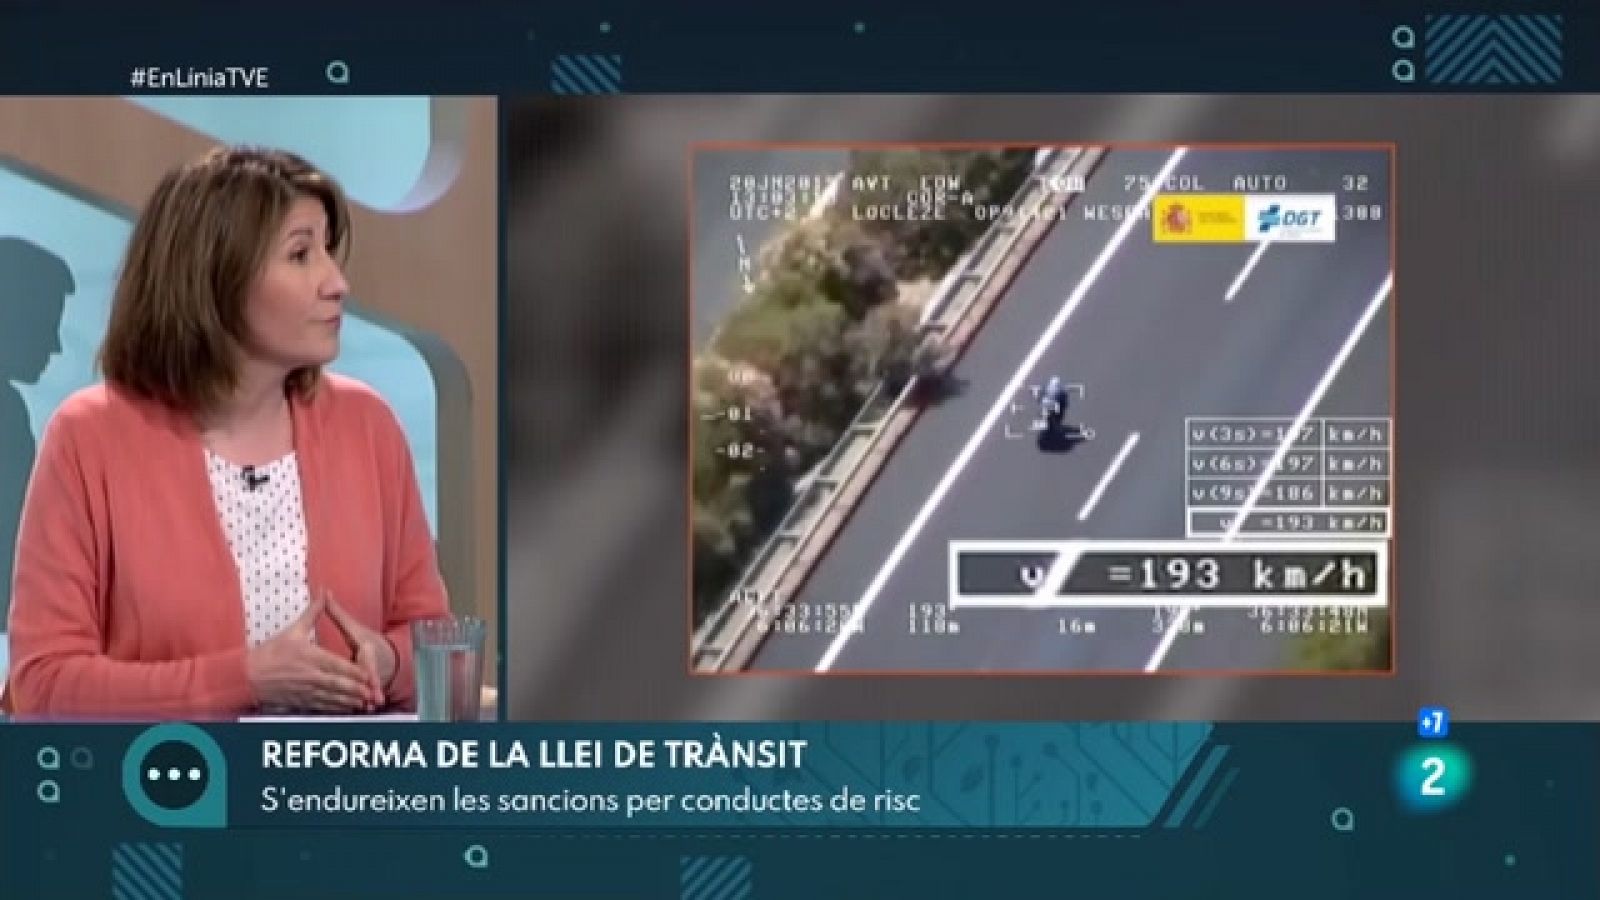 La reforma de la llei de trànsit | En Línia - RTVE Catalunya